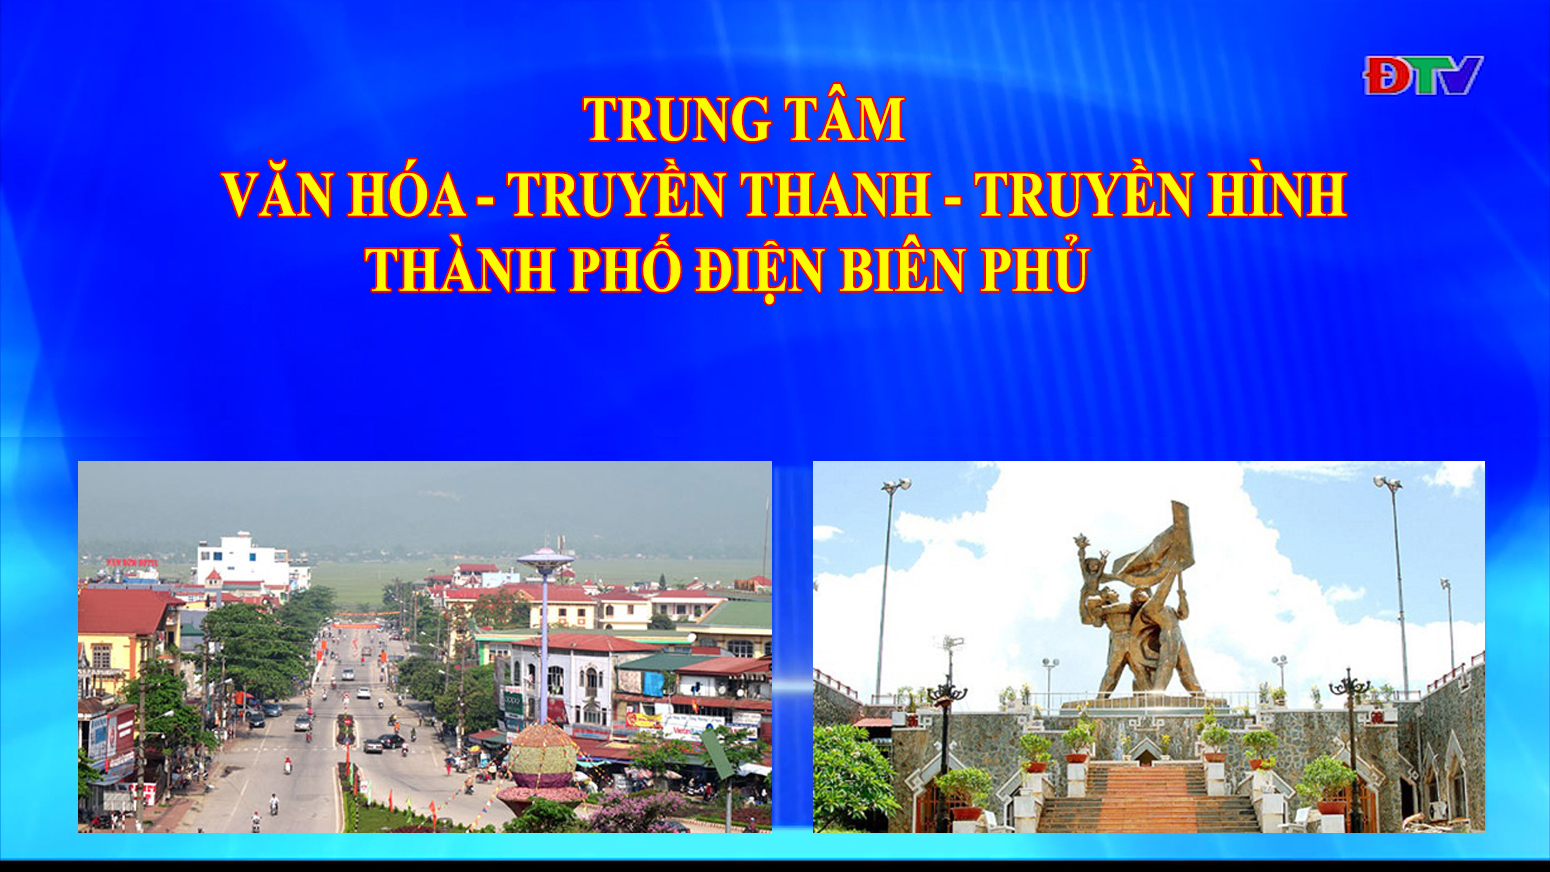 Trung tâm VH-TTTH thành phố Điện Biên Phủ (Ngày 31-5-2022)